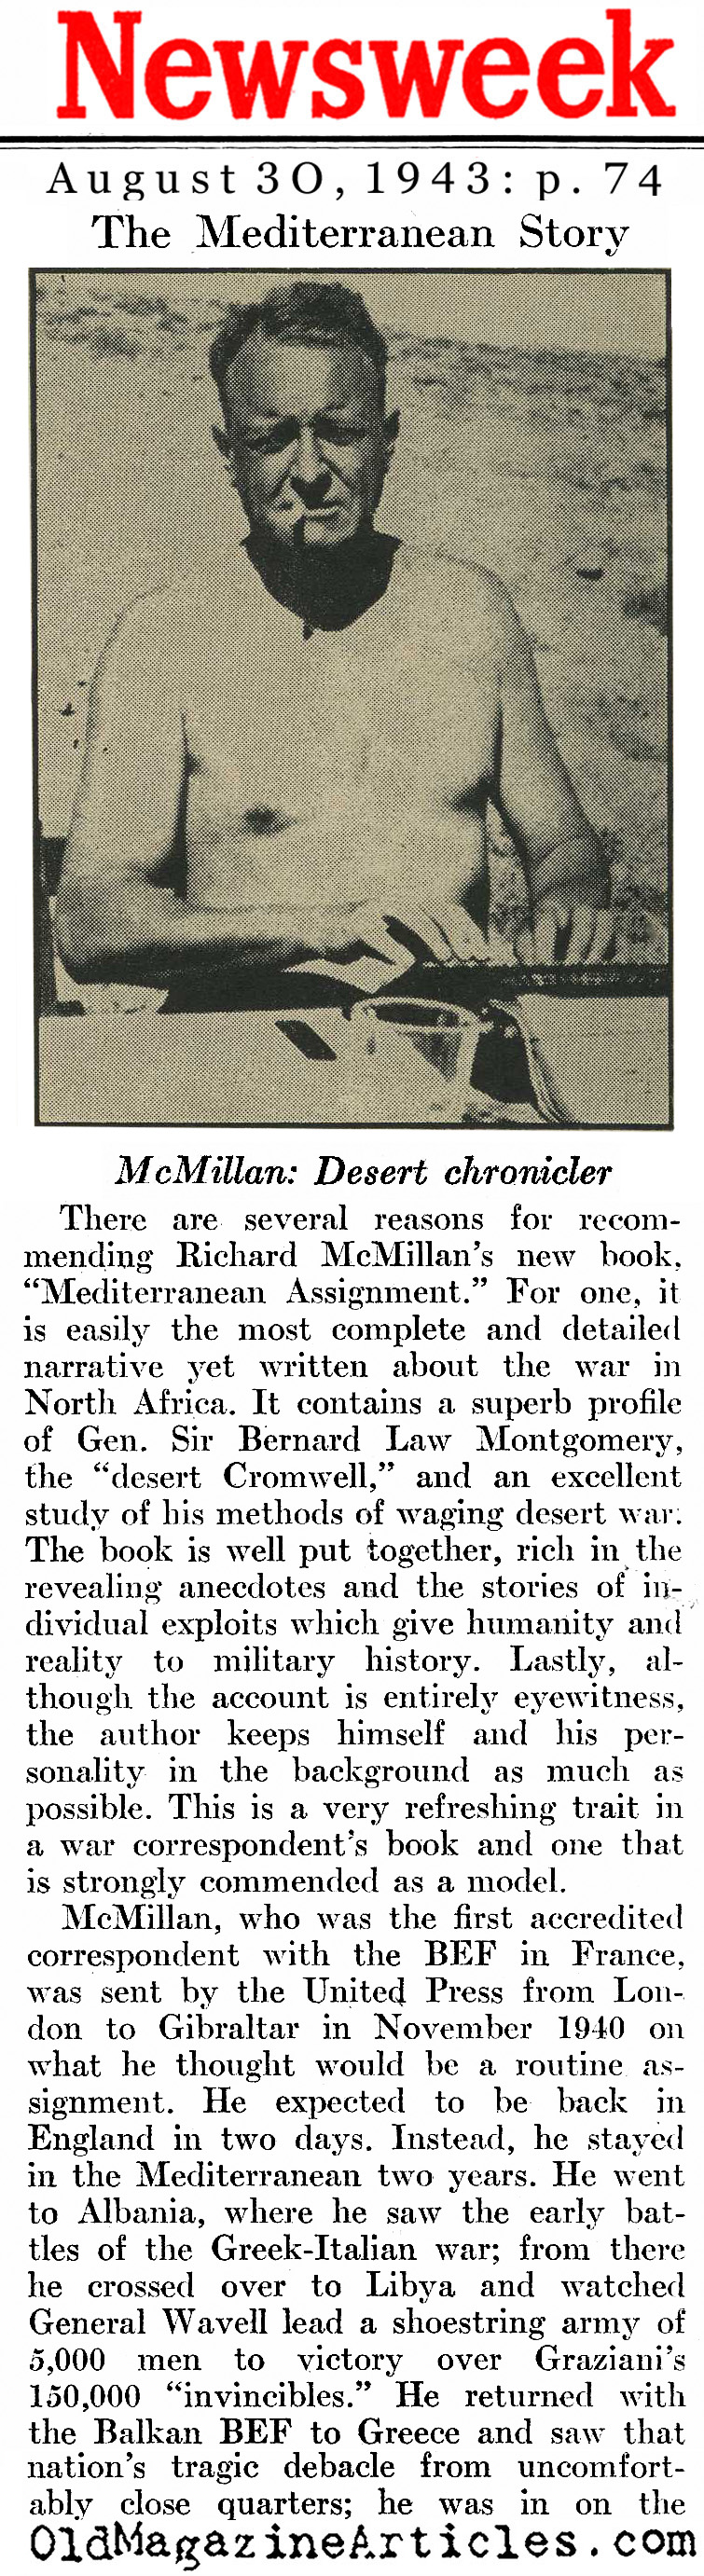 Richard McMillan with the United Press (Newsweek Magazine, 1943)